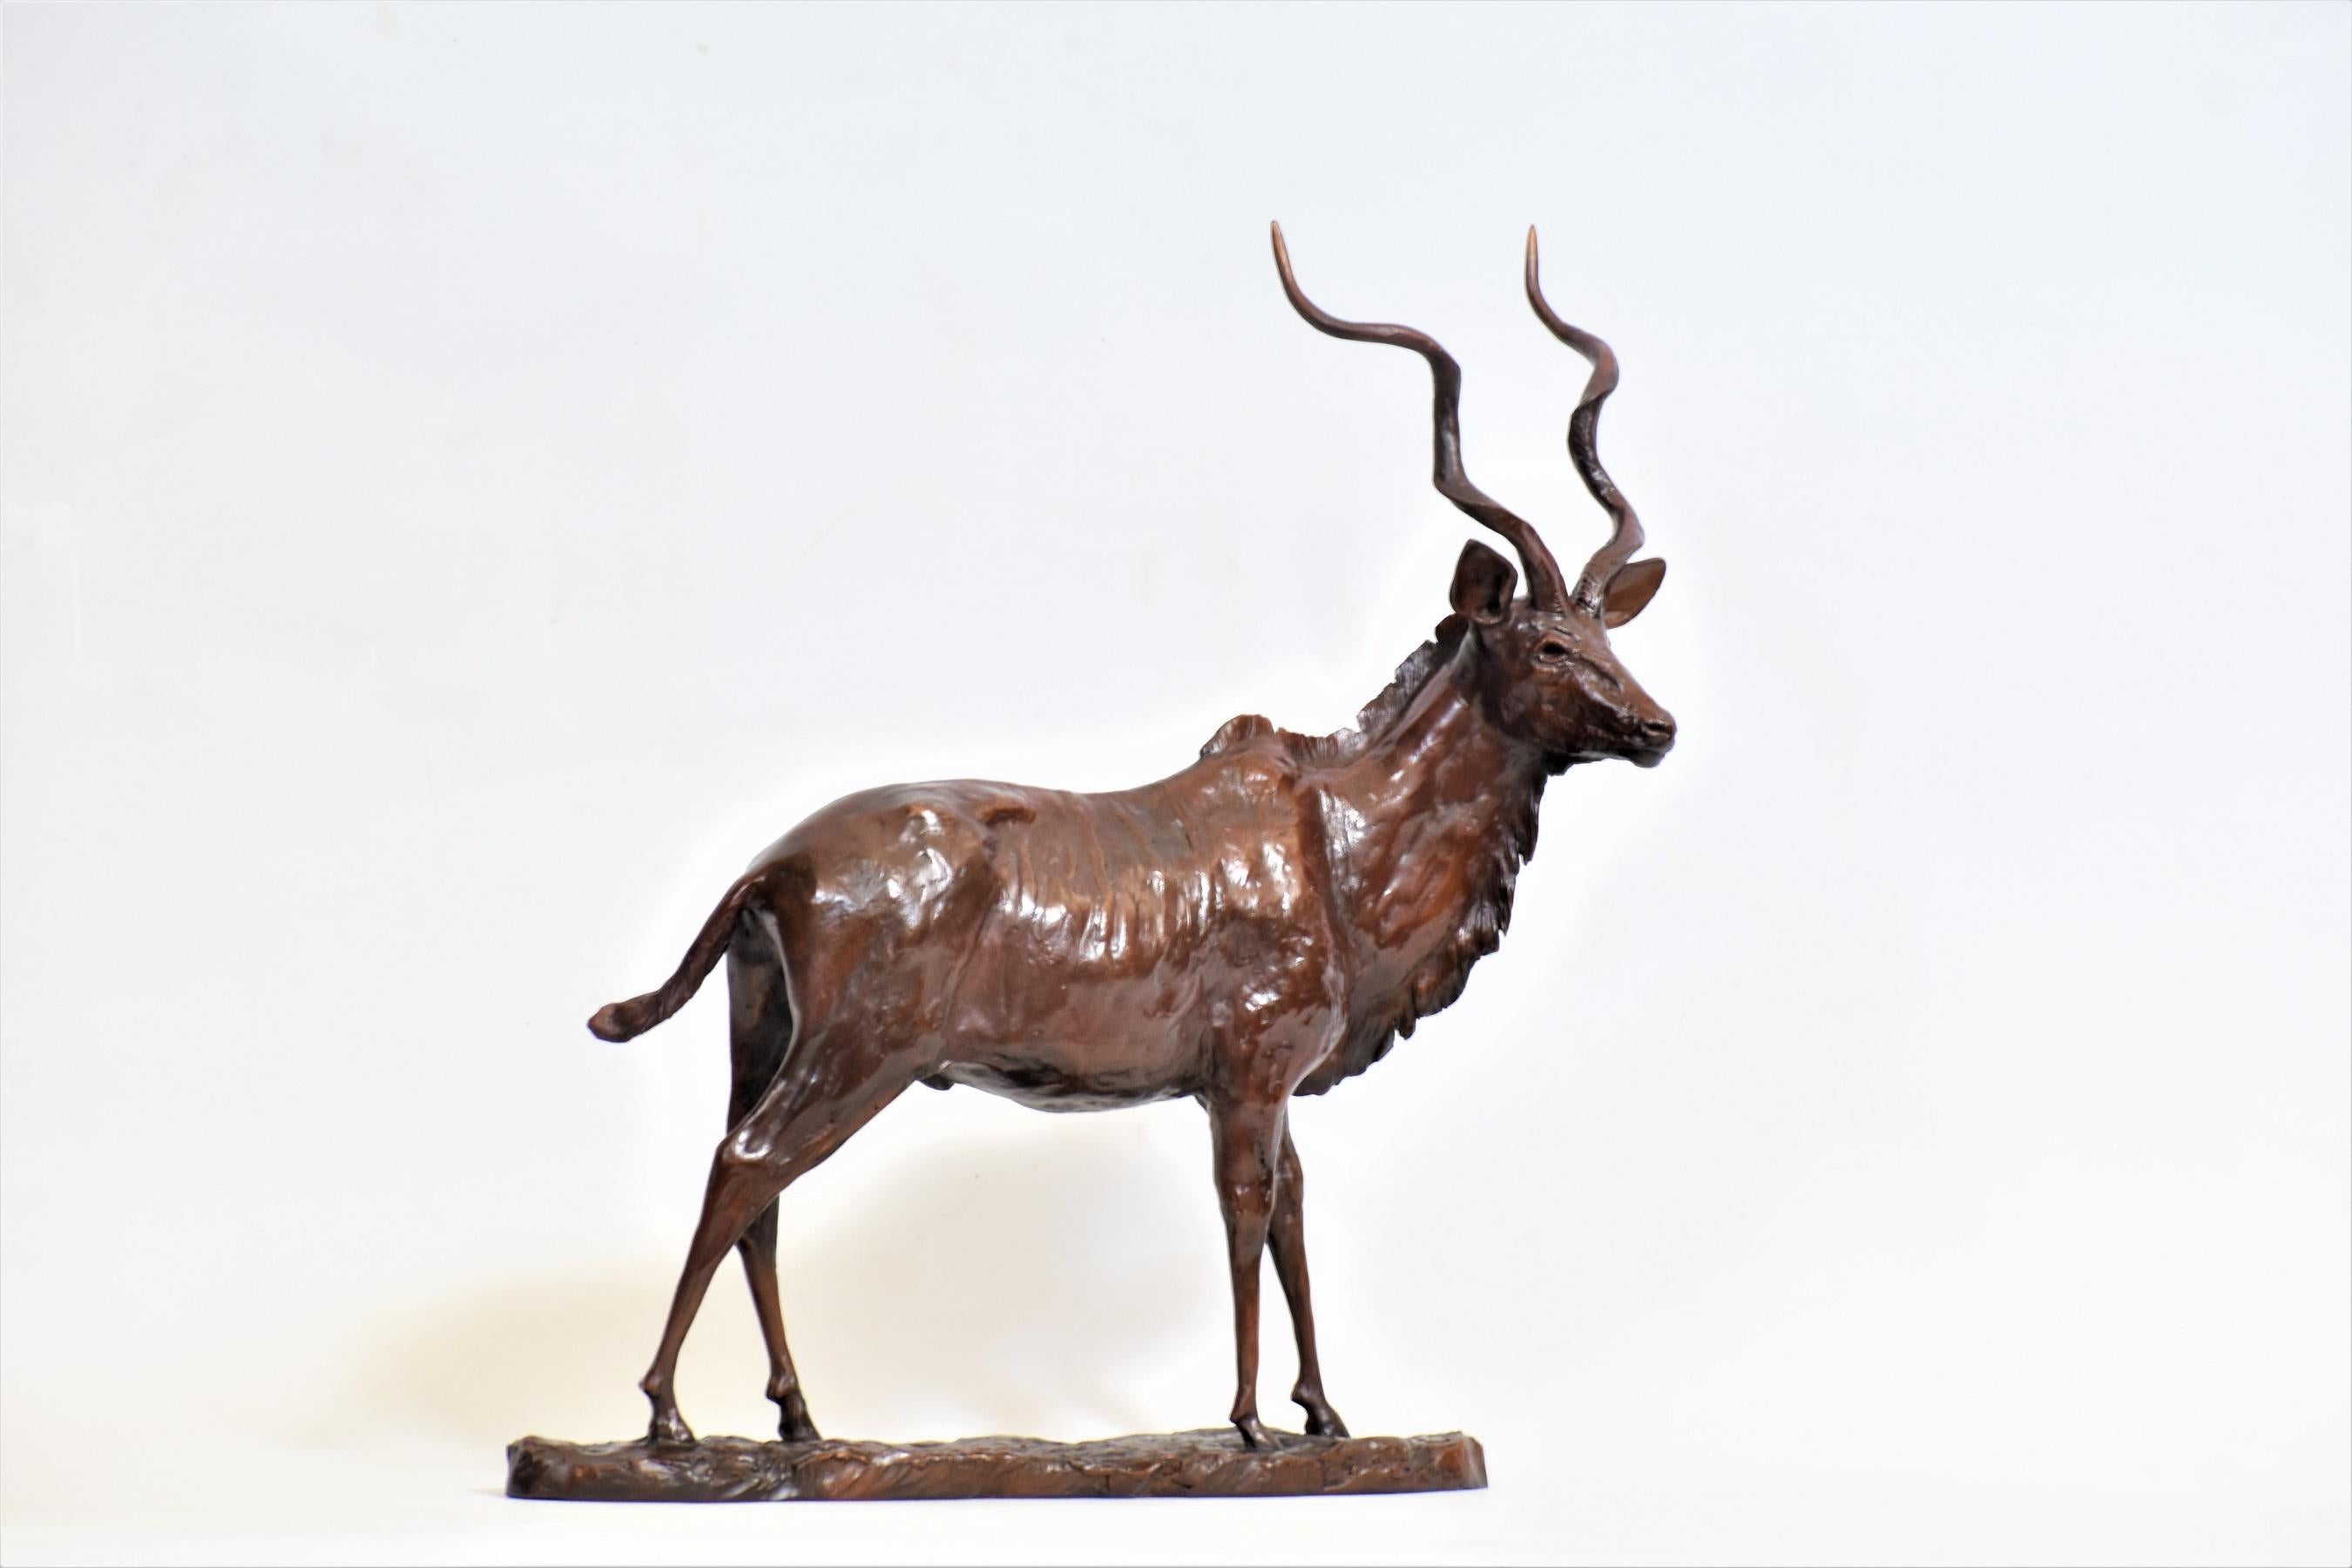 Heinrich Filter Figurative Sculpture - Kudu Bull - African Antelope Bronze Sculpture